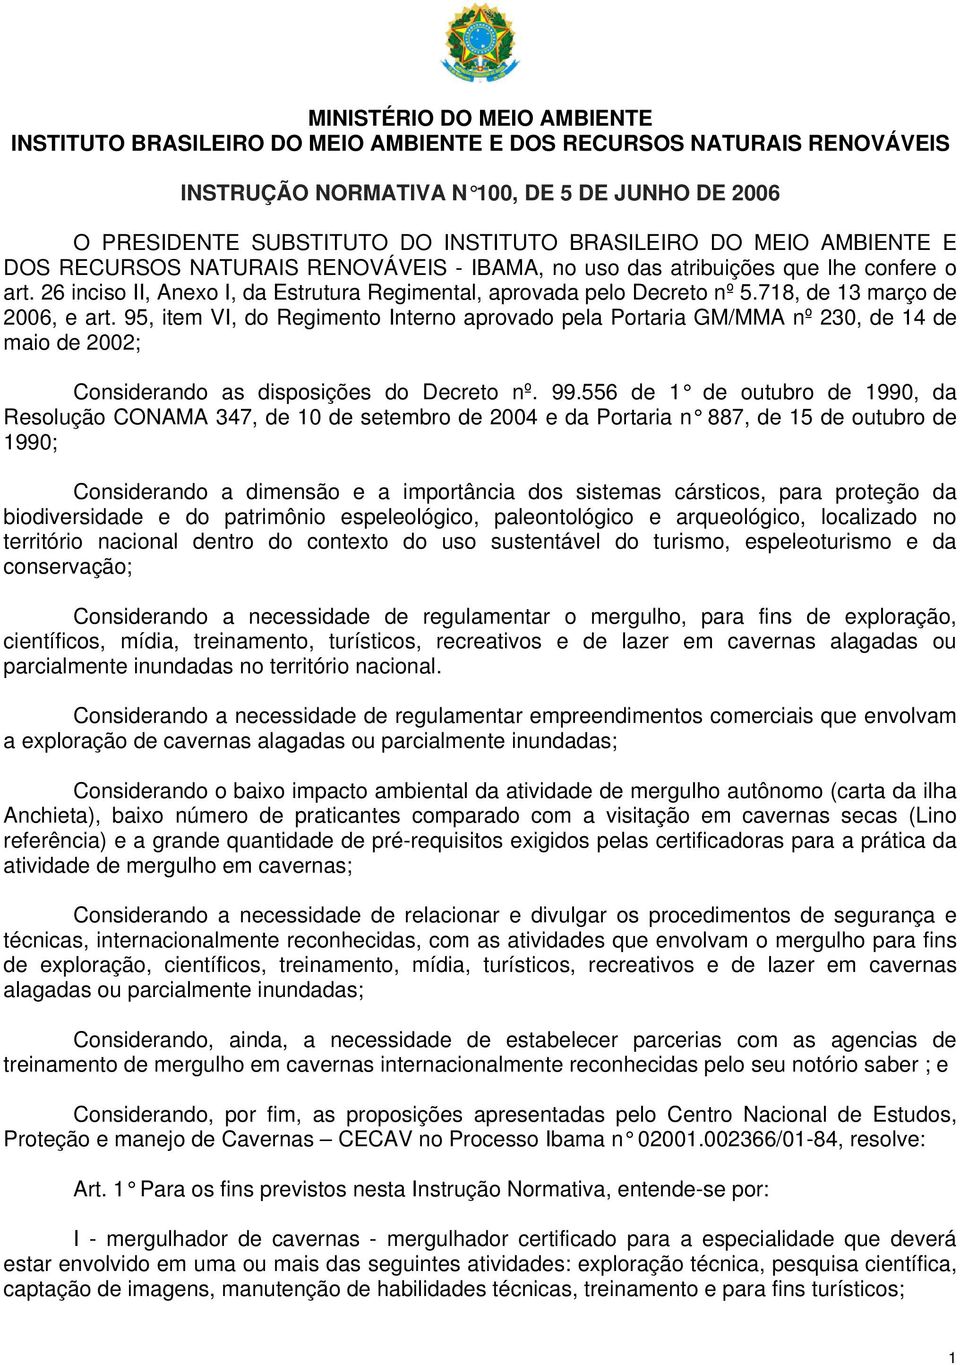 718, de 13 março de 2006, e art. 95, item VI, do Regimento Interno aprovado pela Portaria GM/MMA nº 230, de 14 de maio de 2002; Considerando as disposições do Decreto nº. 99.